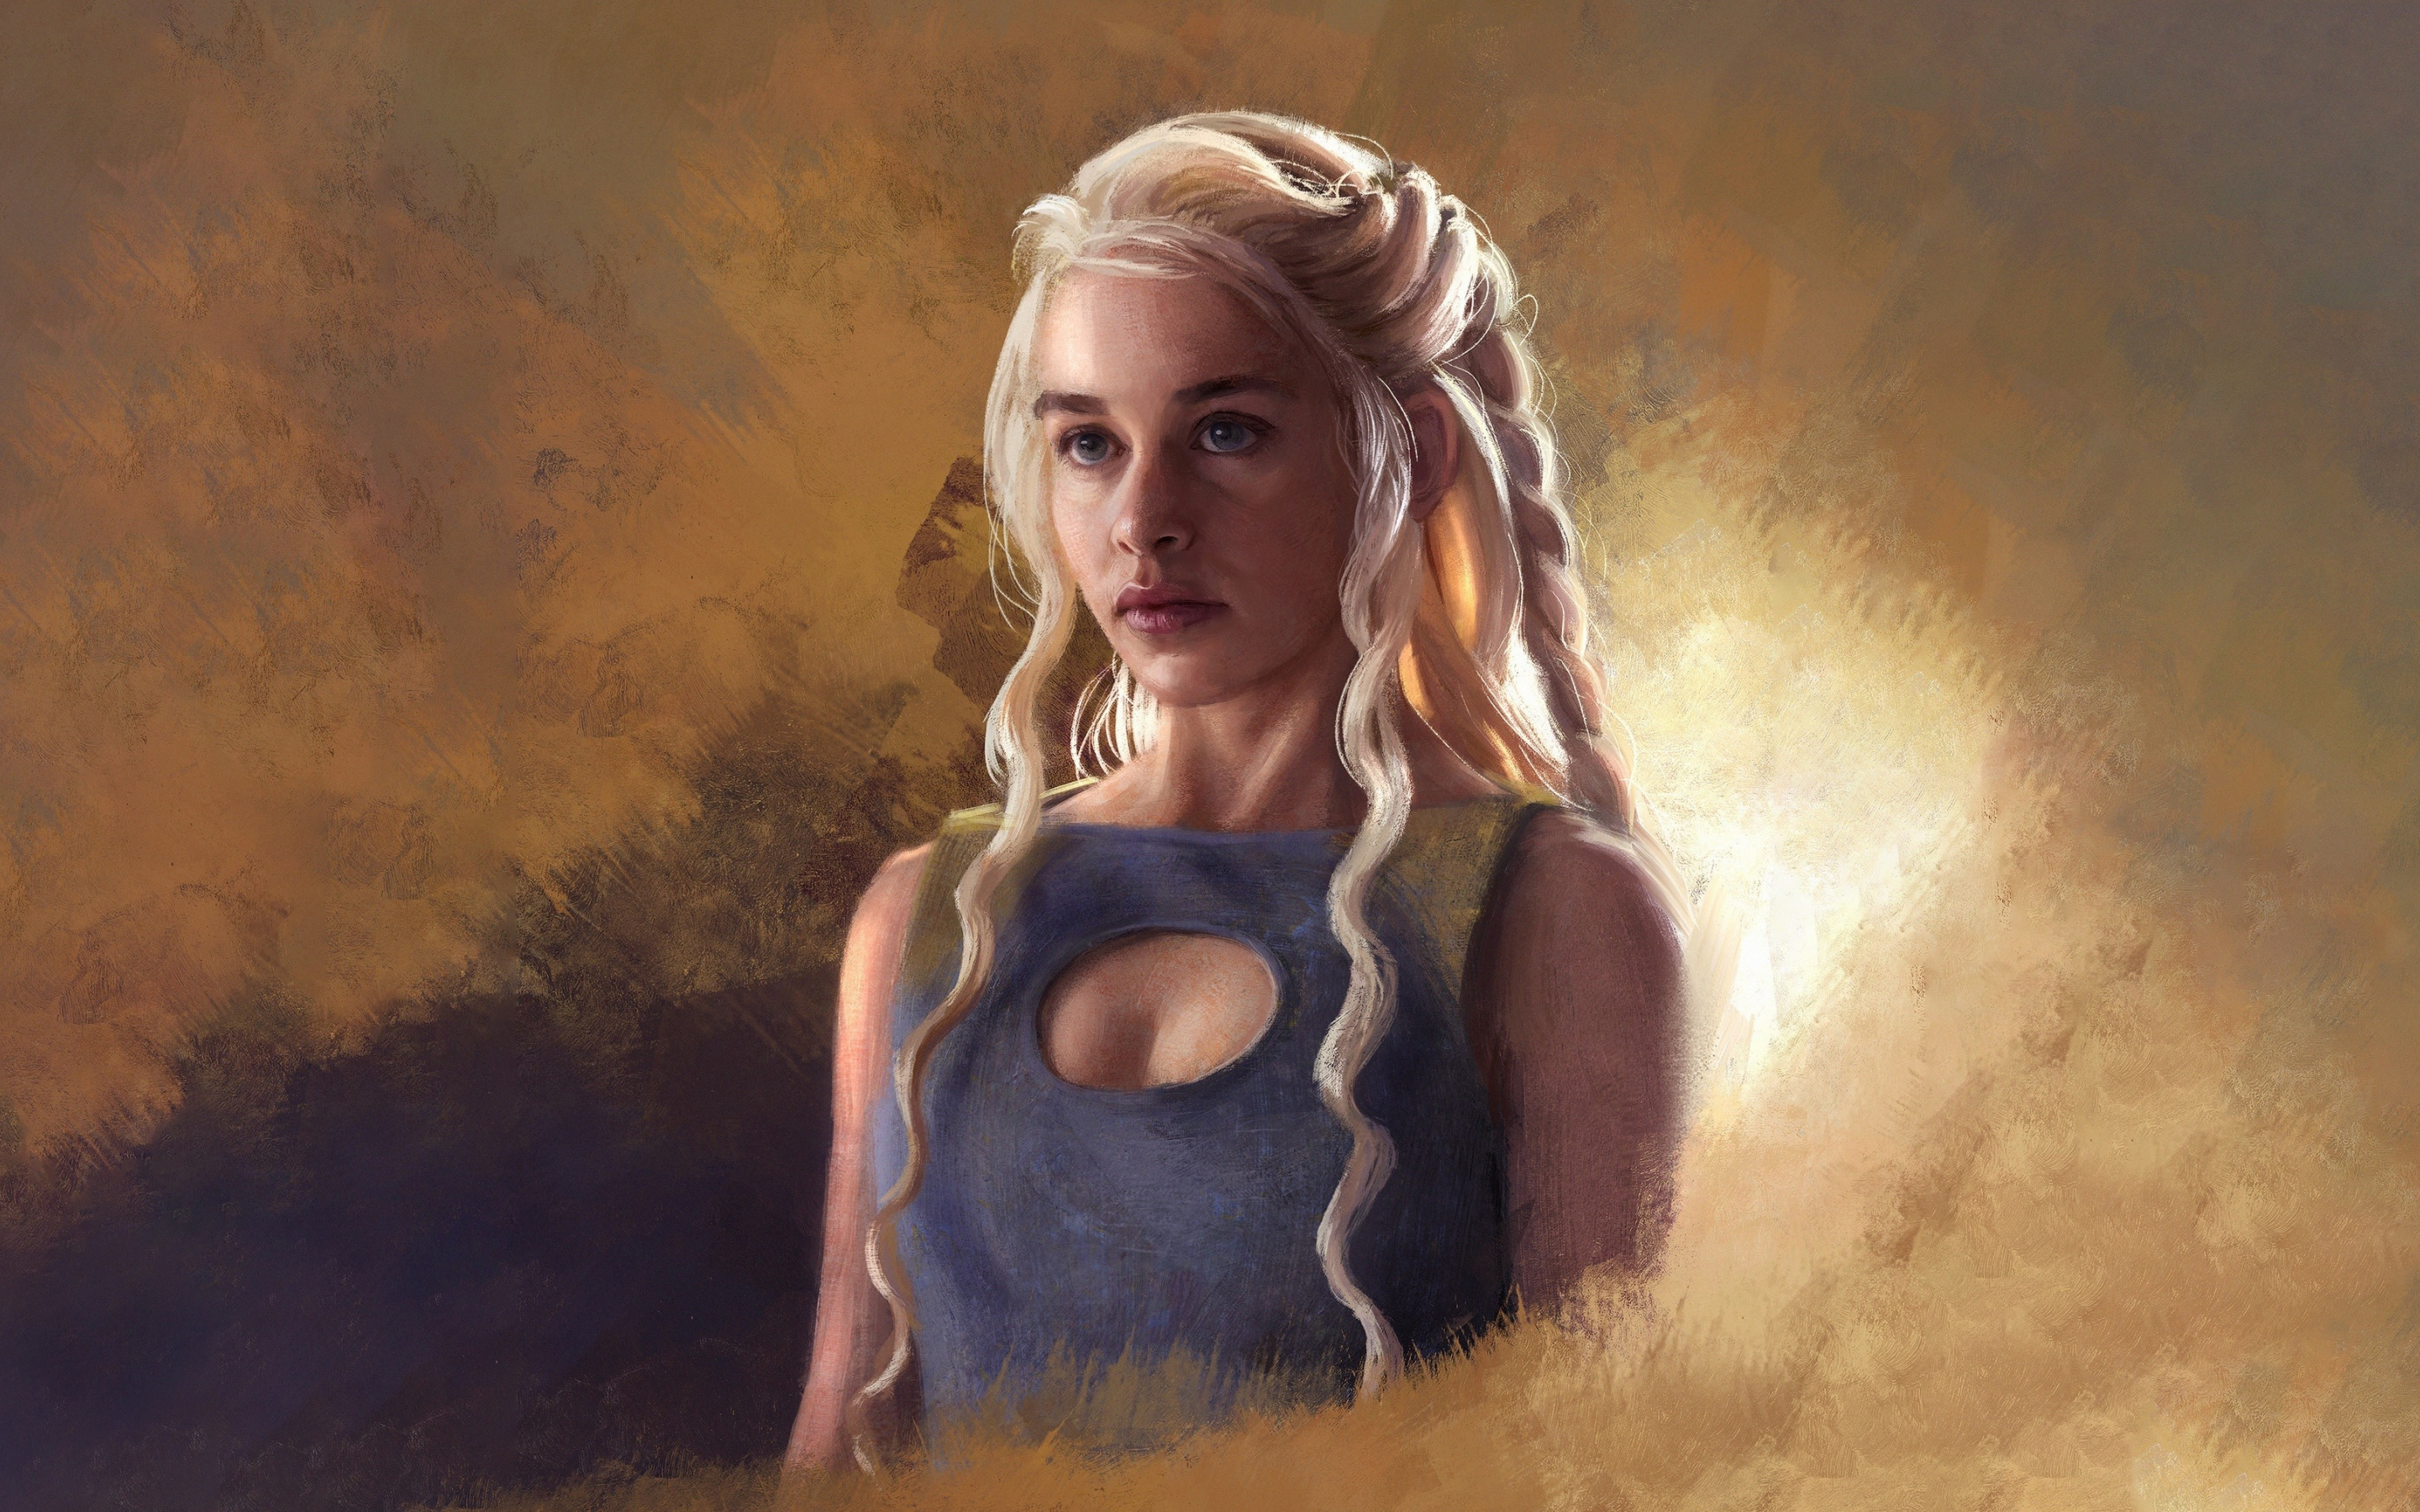 Daenerys targaryen, emilia clarke, game of thrones, fan art, 2880x1800 wallpaper